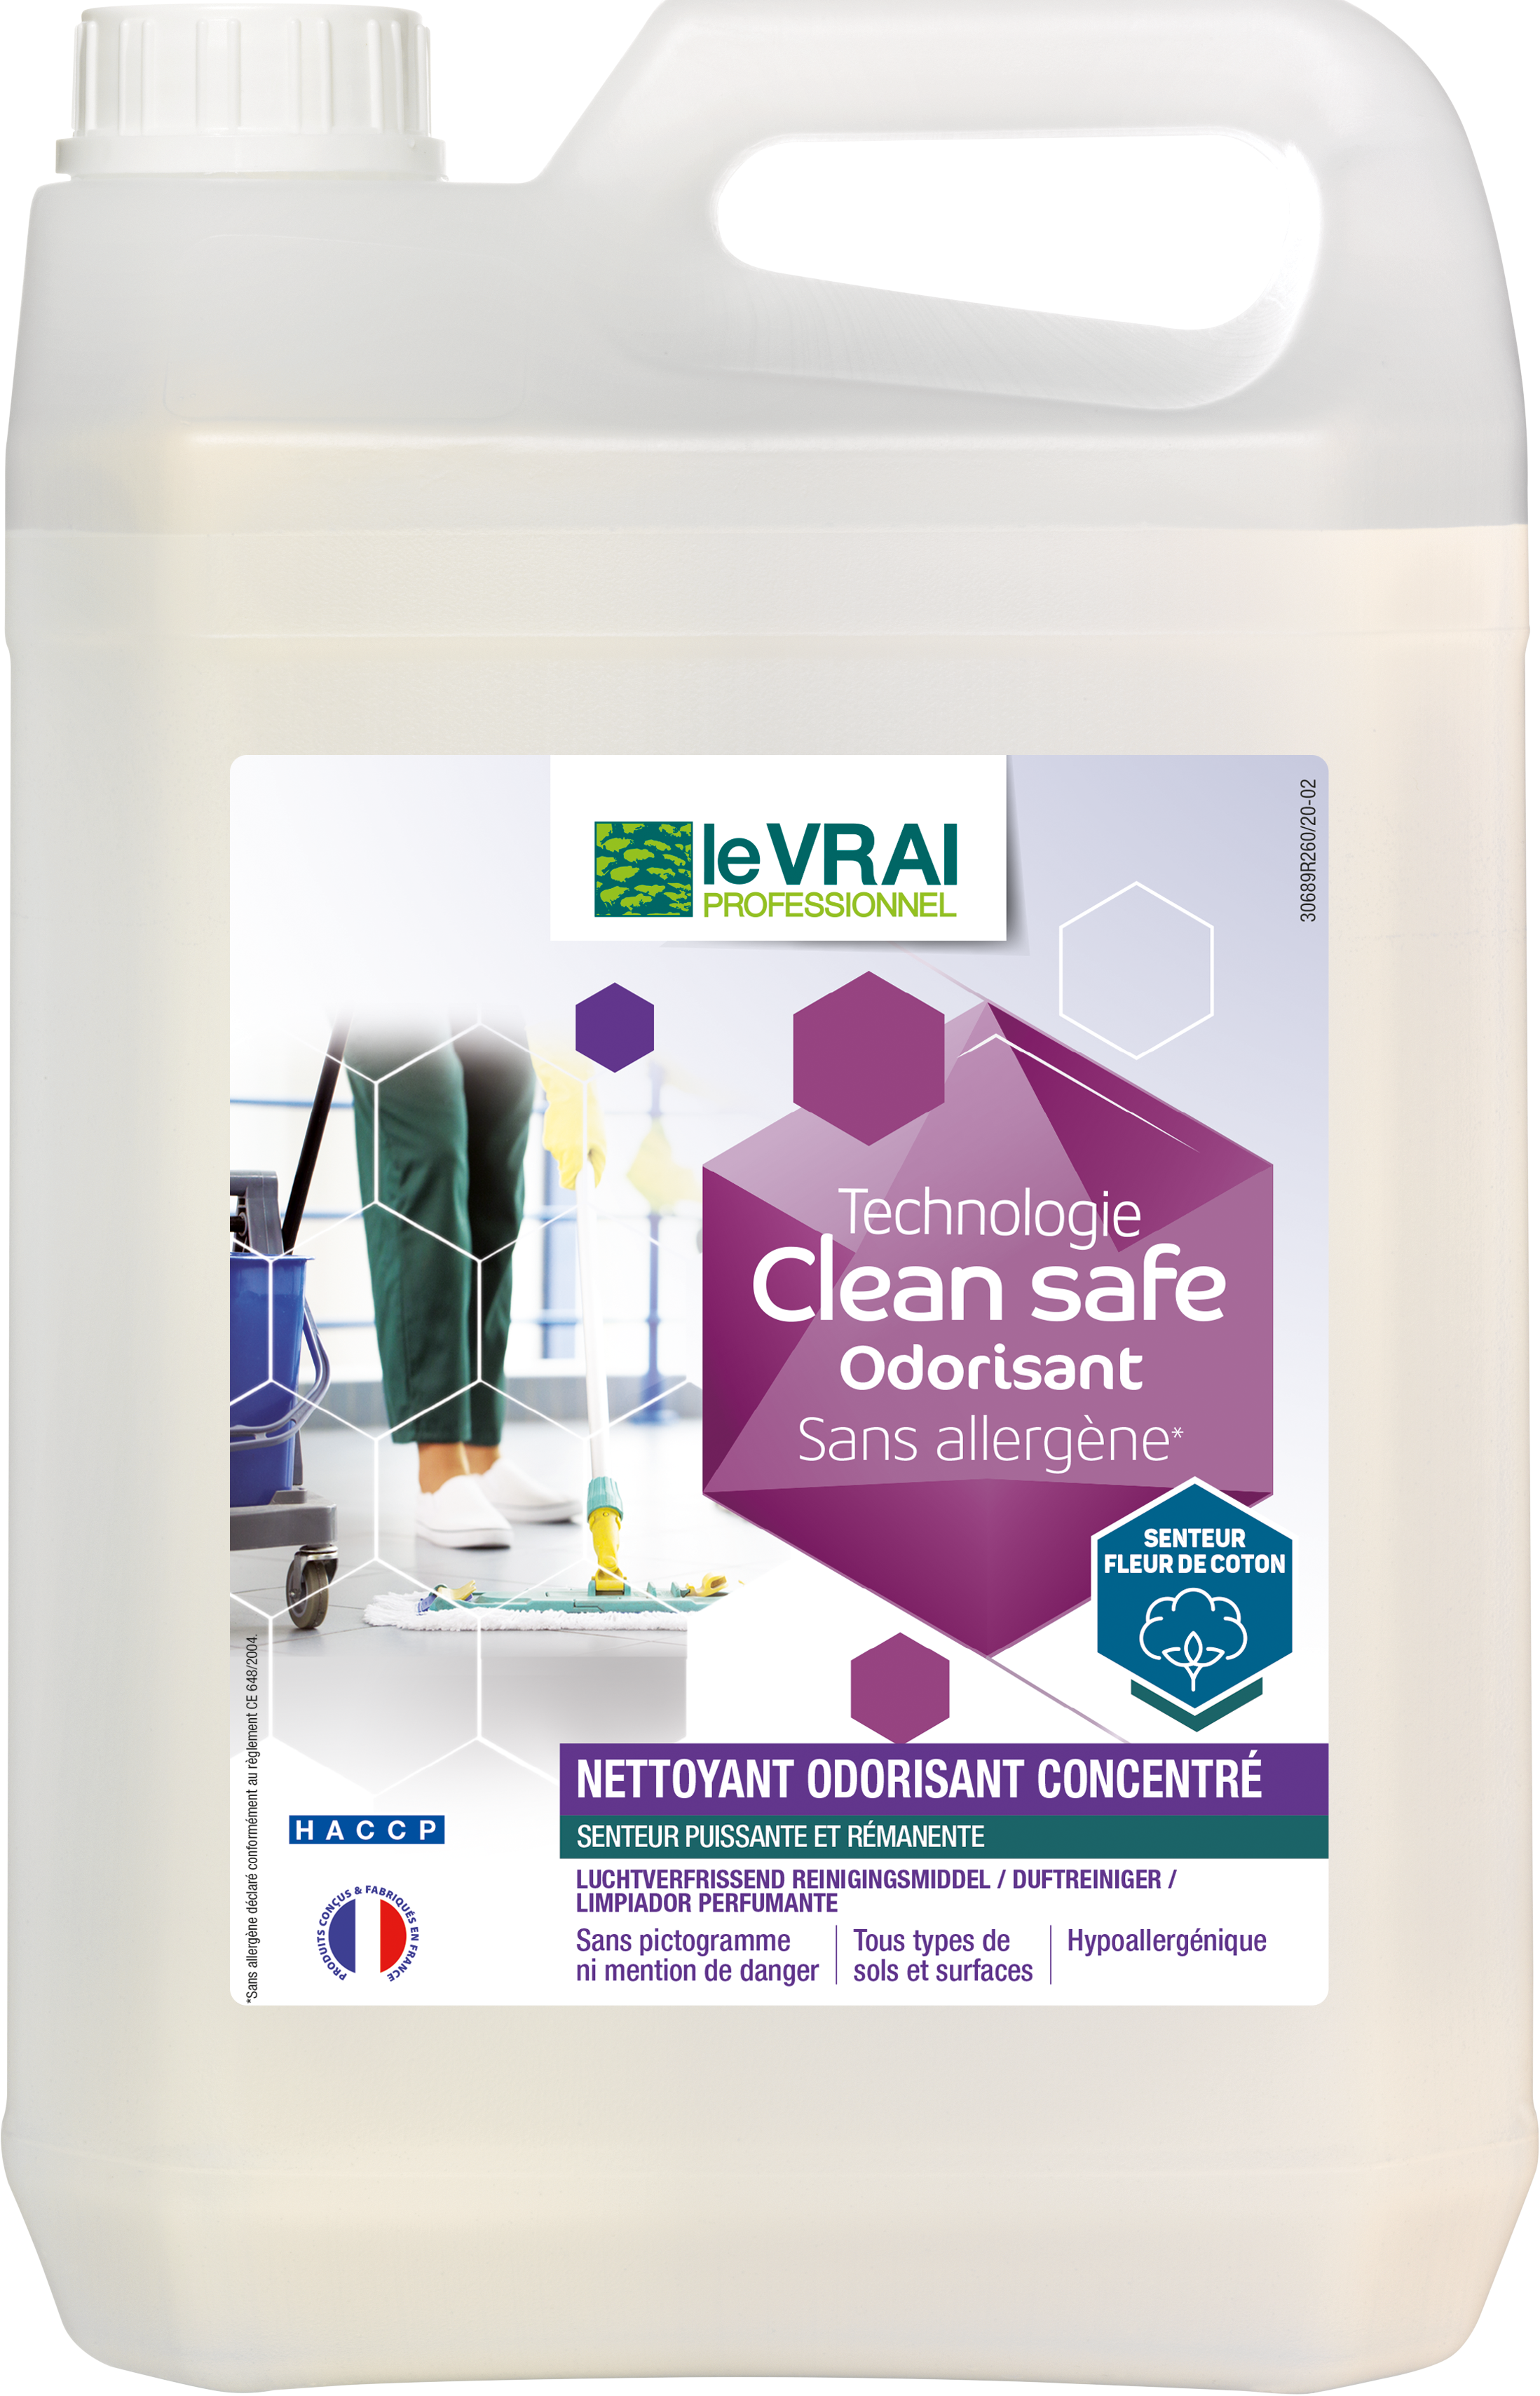 Clean Safe Nettoyant Odorisant Concentré Le VRAI PROFESSIONNEL | Action Pin